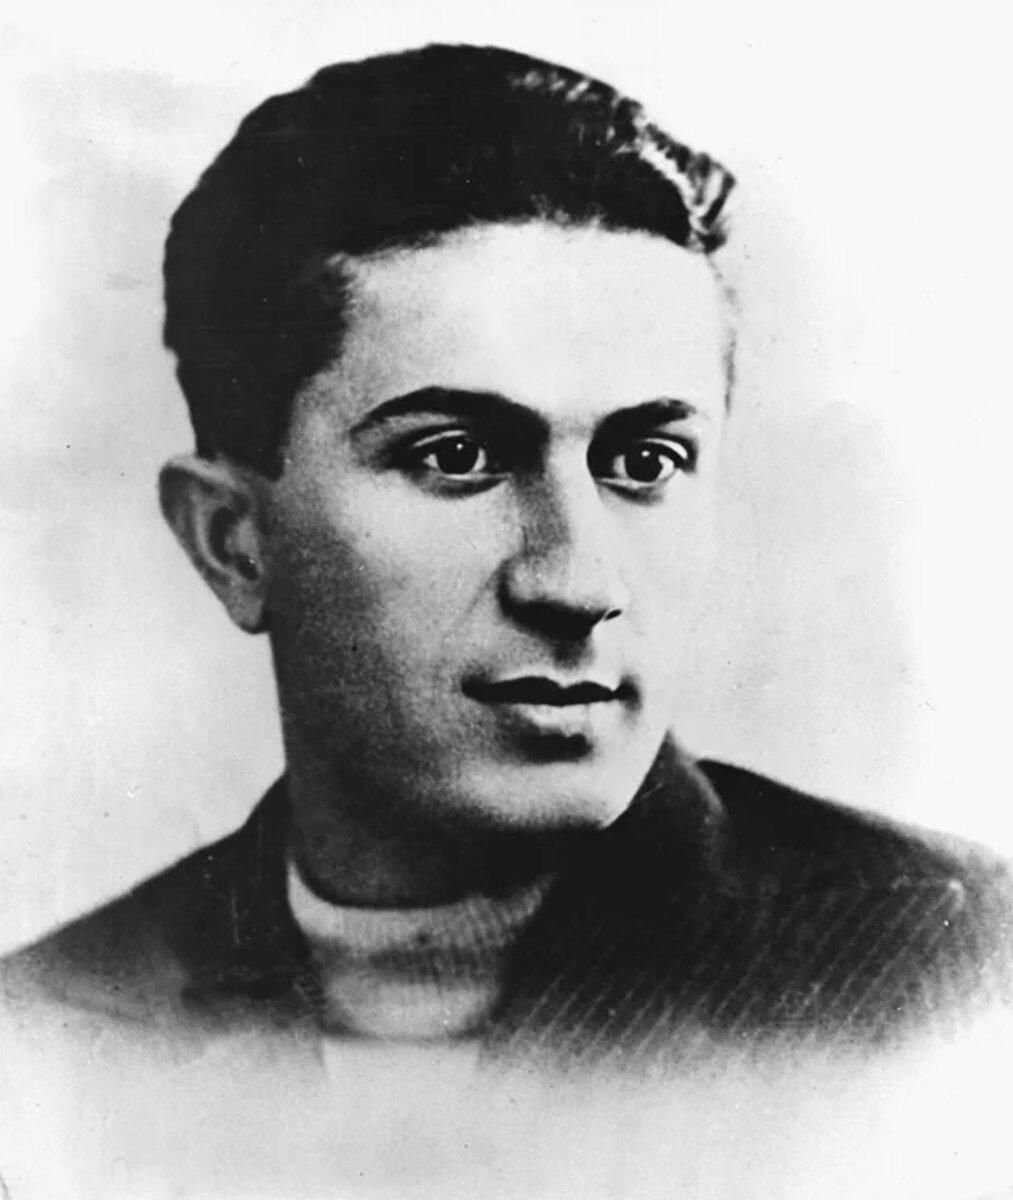 Яков Иосифович Джугашвили 1907-1943 – старший сын Иосифа Сталина, старший лейтенант, погибший в разгар Великой Отечественной войны в немецком плену